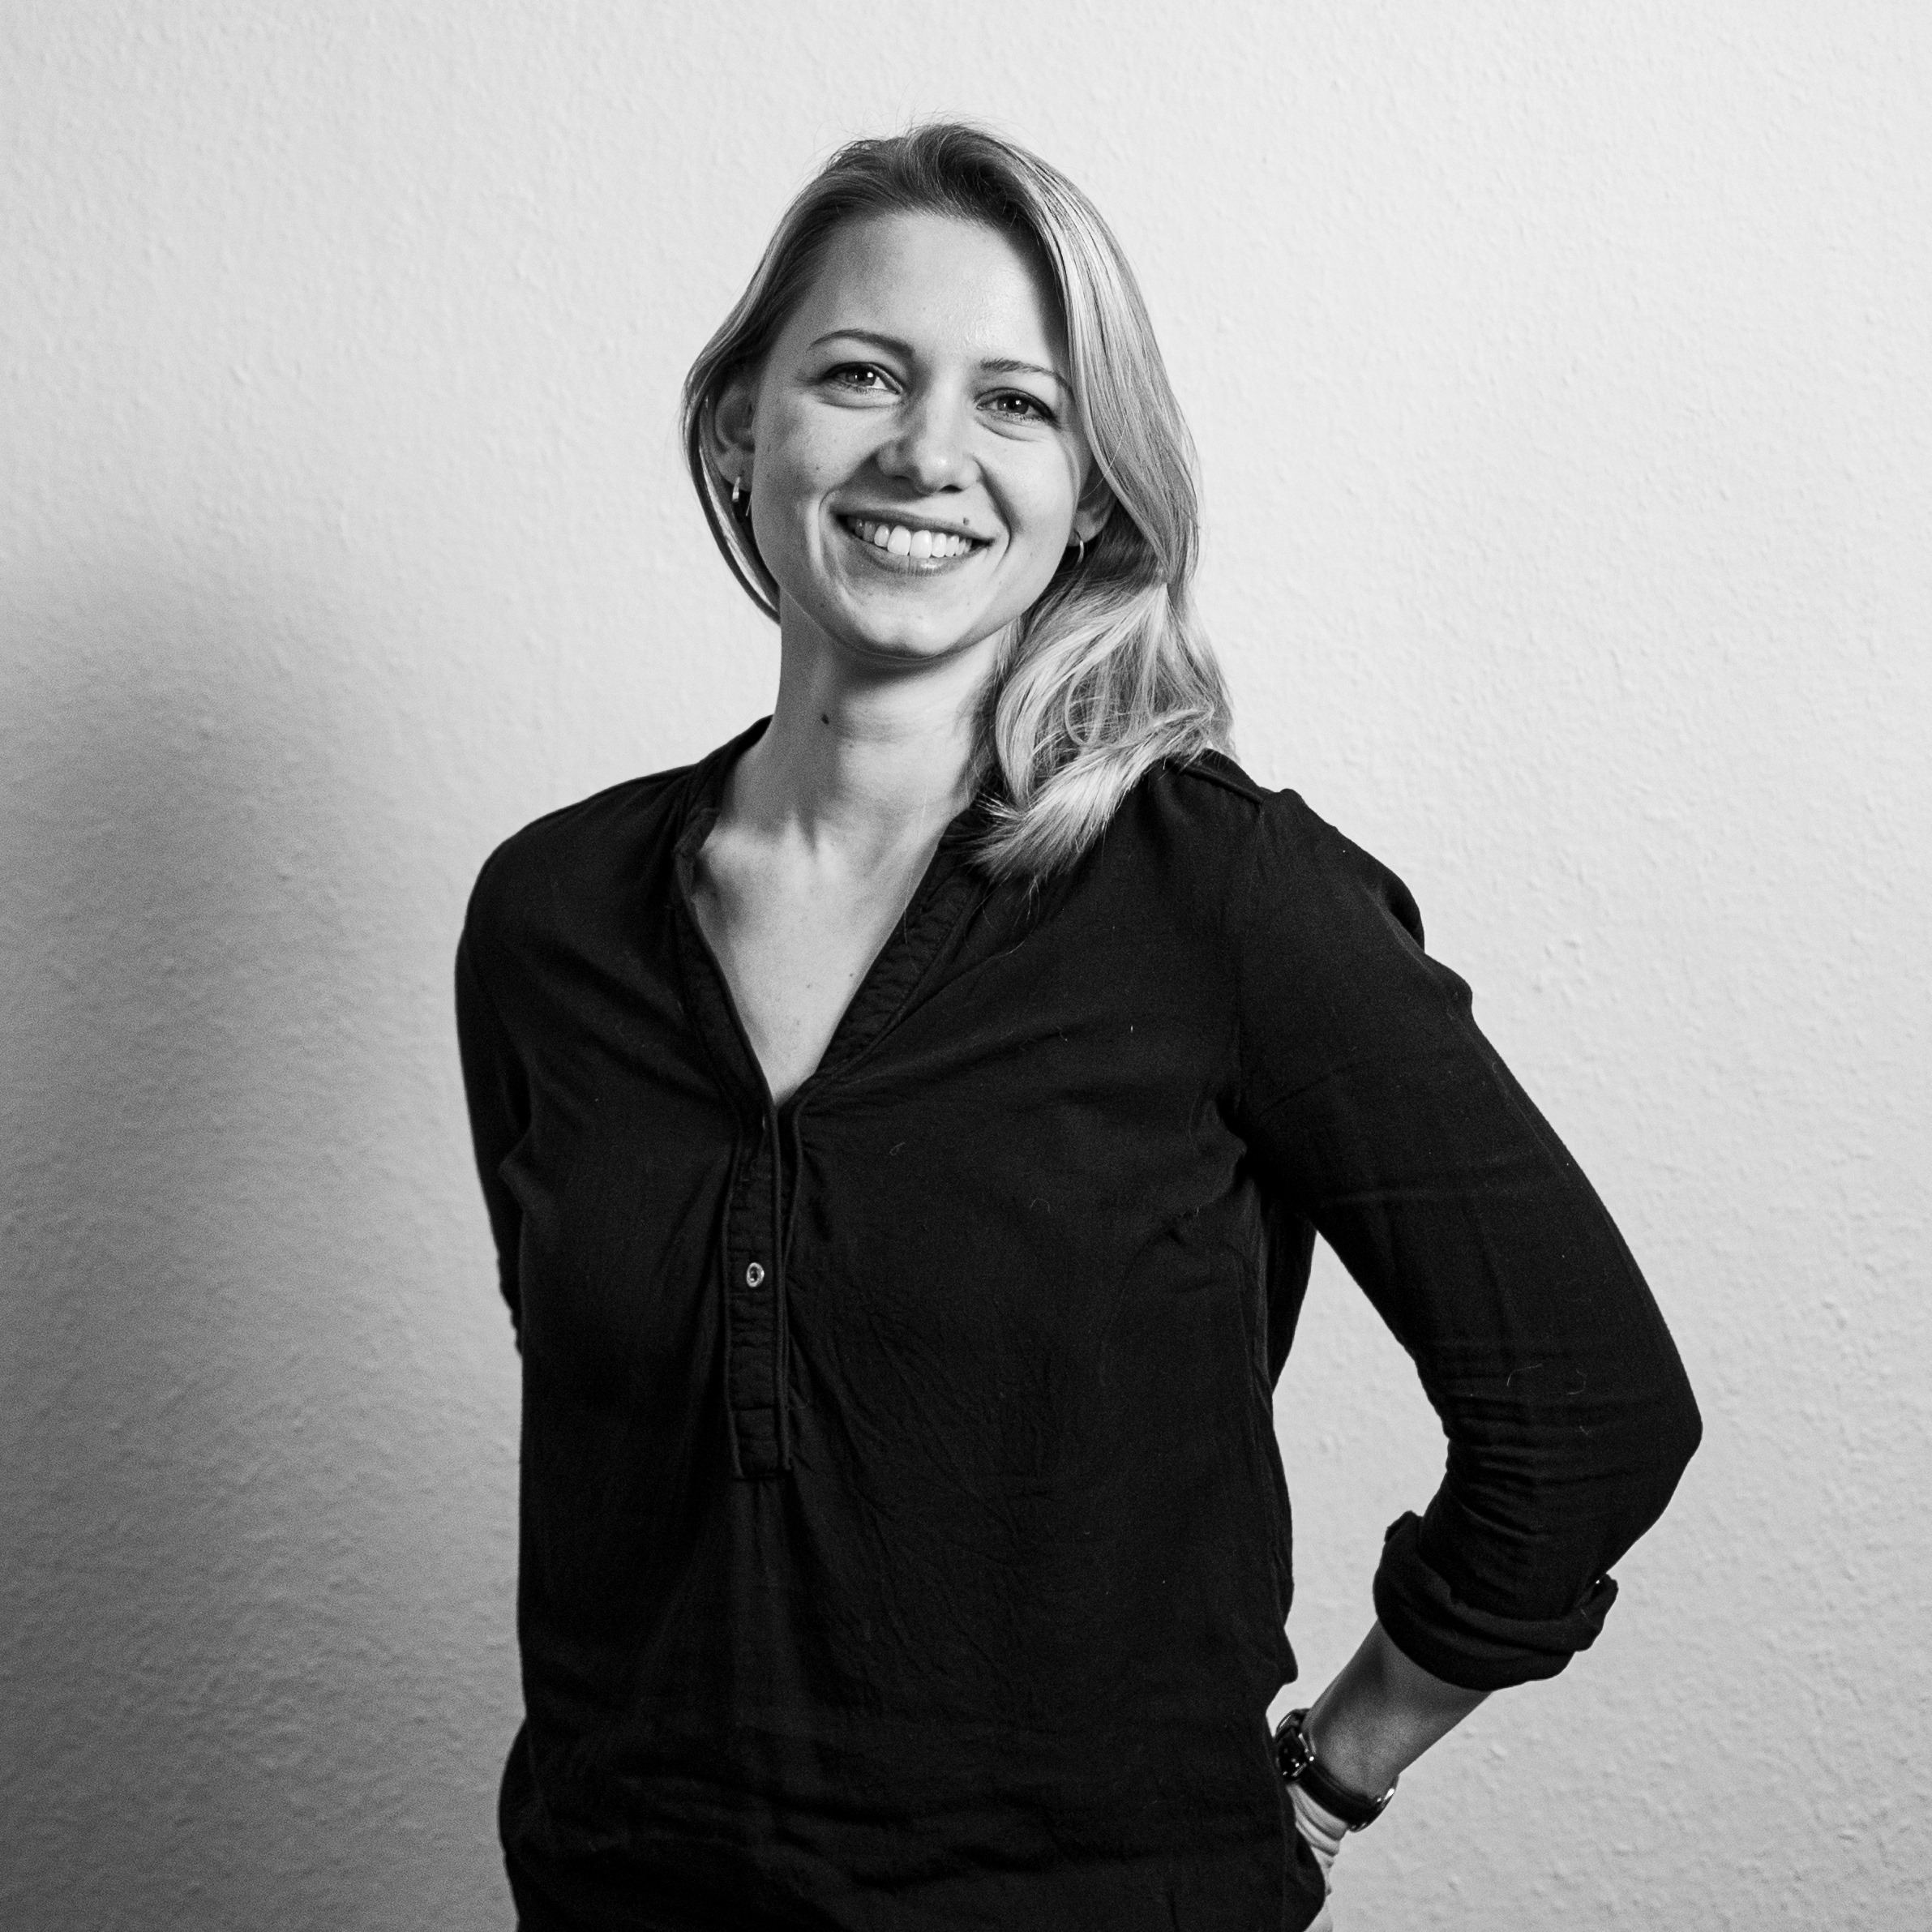 Maren Meheust Creative Strategist von We Are Social vor einer weißen Wand in einem schwarzen Shirt. Das Bild ist schwarz-weiß 